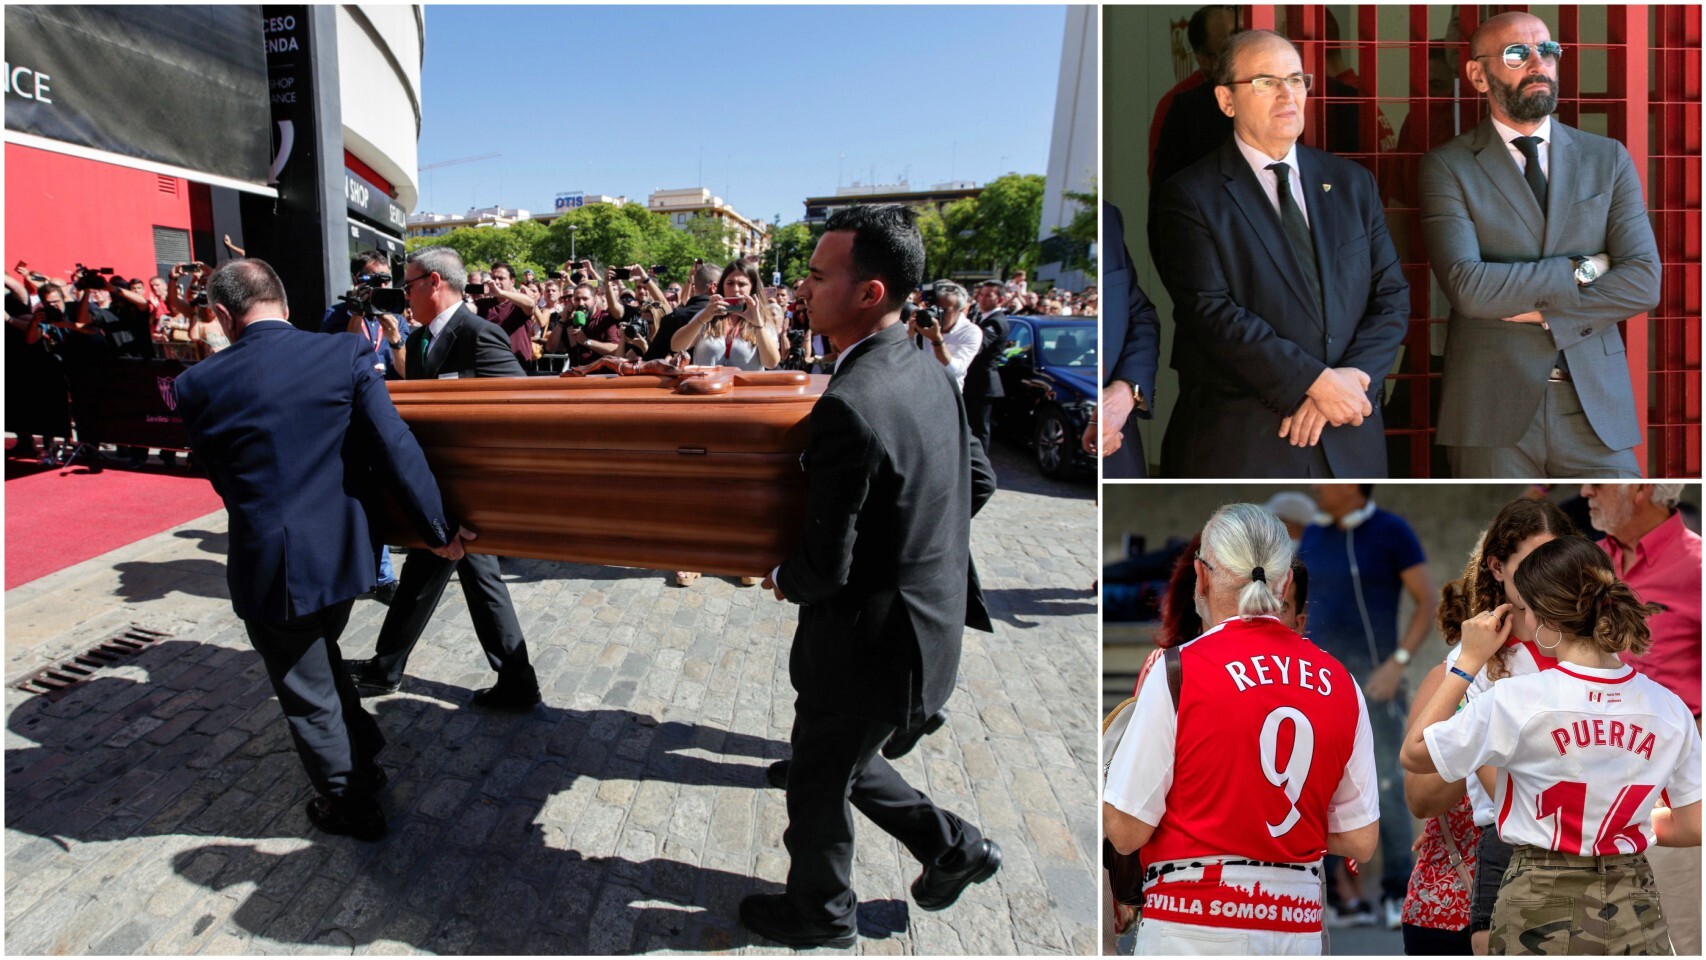 Vídeo: Así fue el emotivo adiós a José Antonio Reyes del mundo del fútbol  en el Sánchez Pizjuán